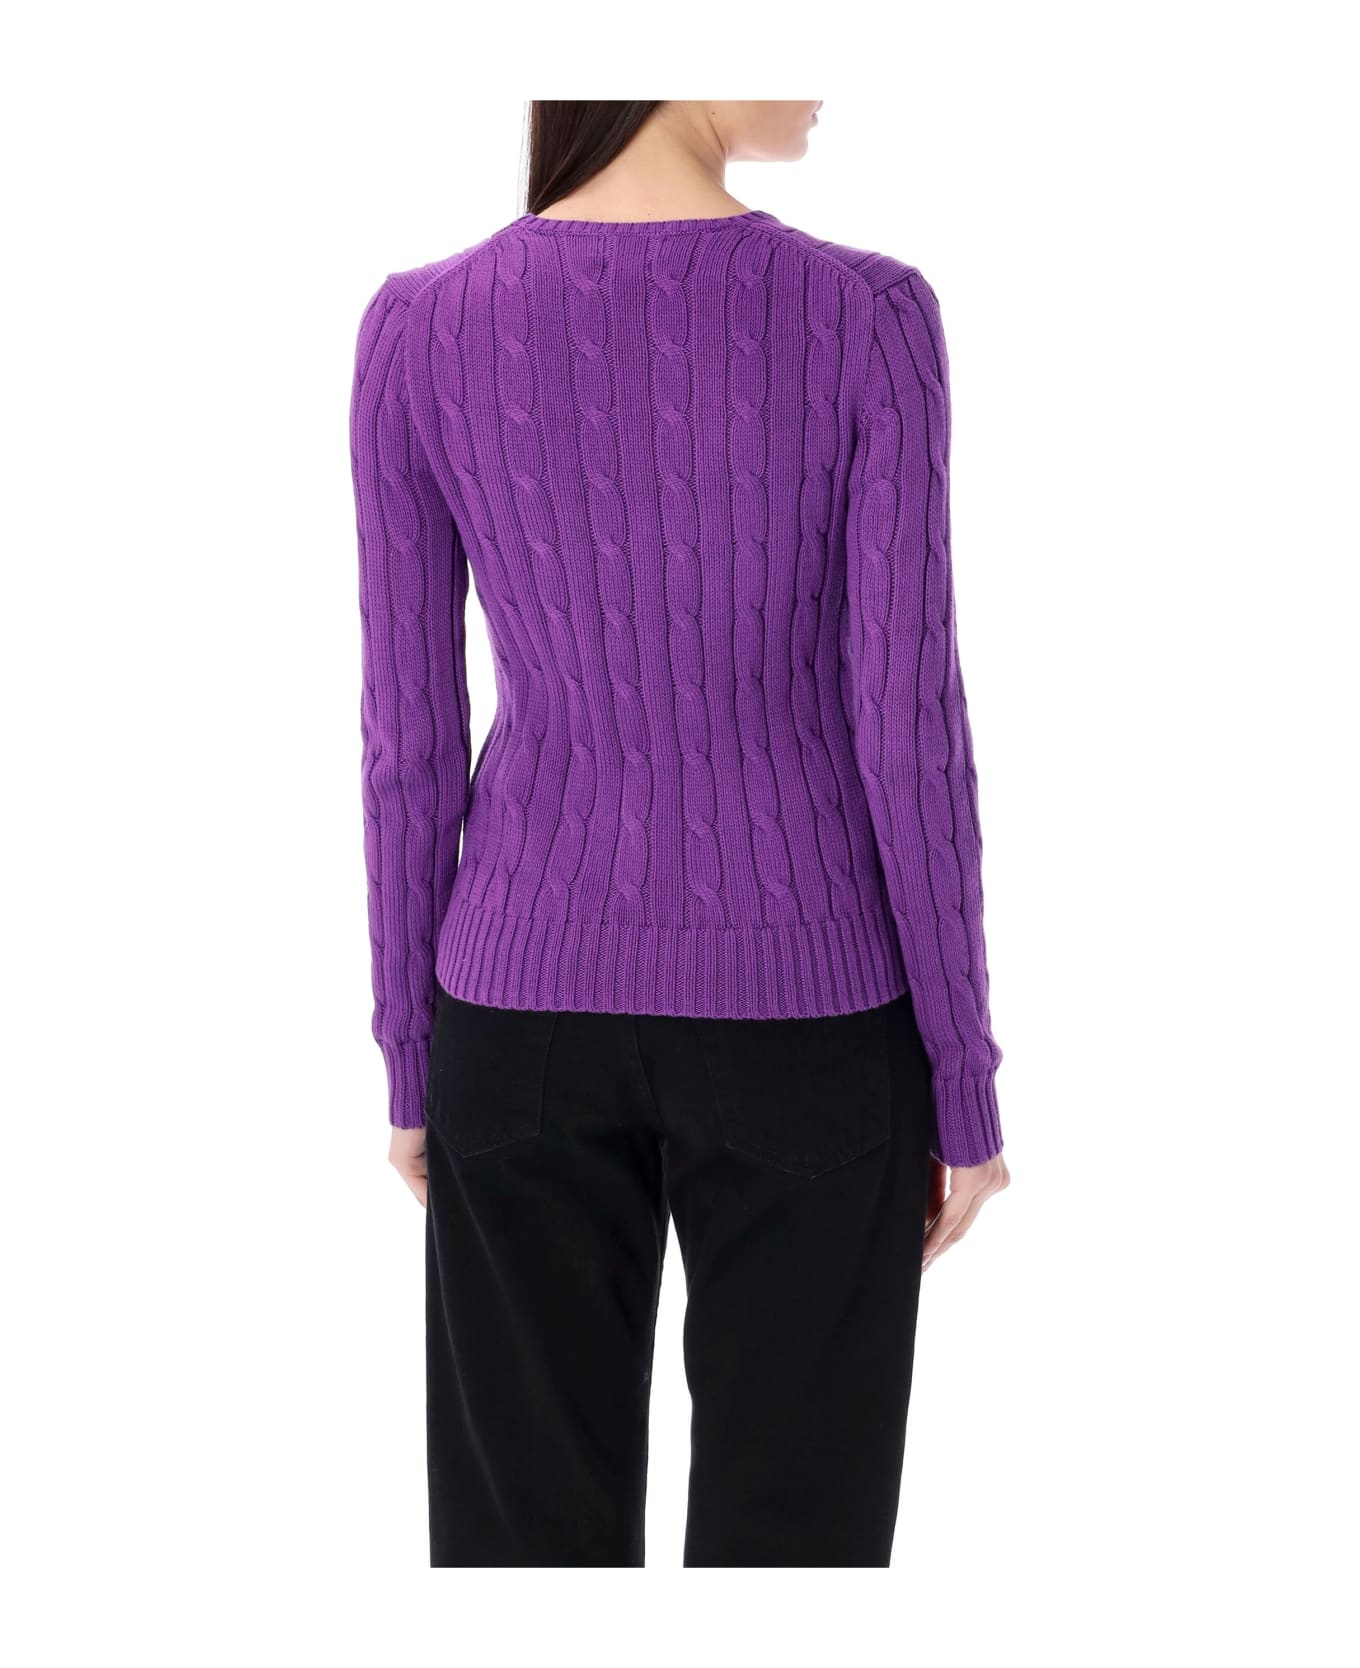 Polo Ralph Lauren Cable-knit Cotton Crewneck Sweater - PALOMA PURPLE